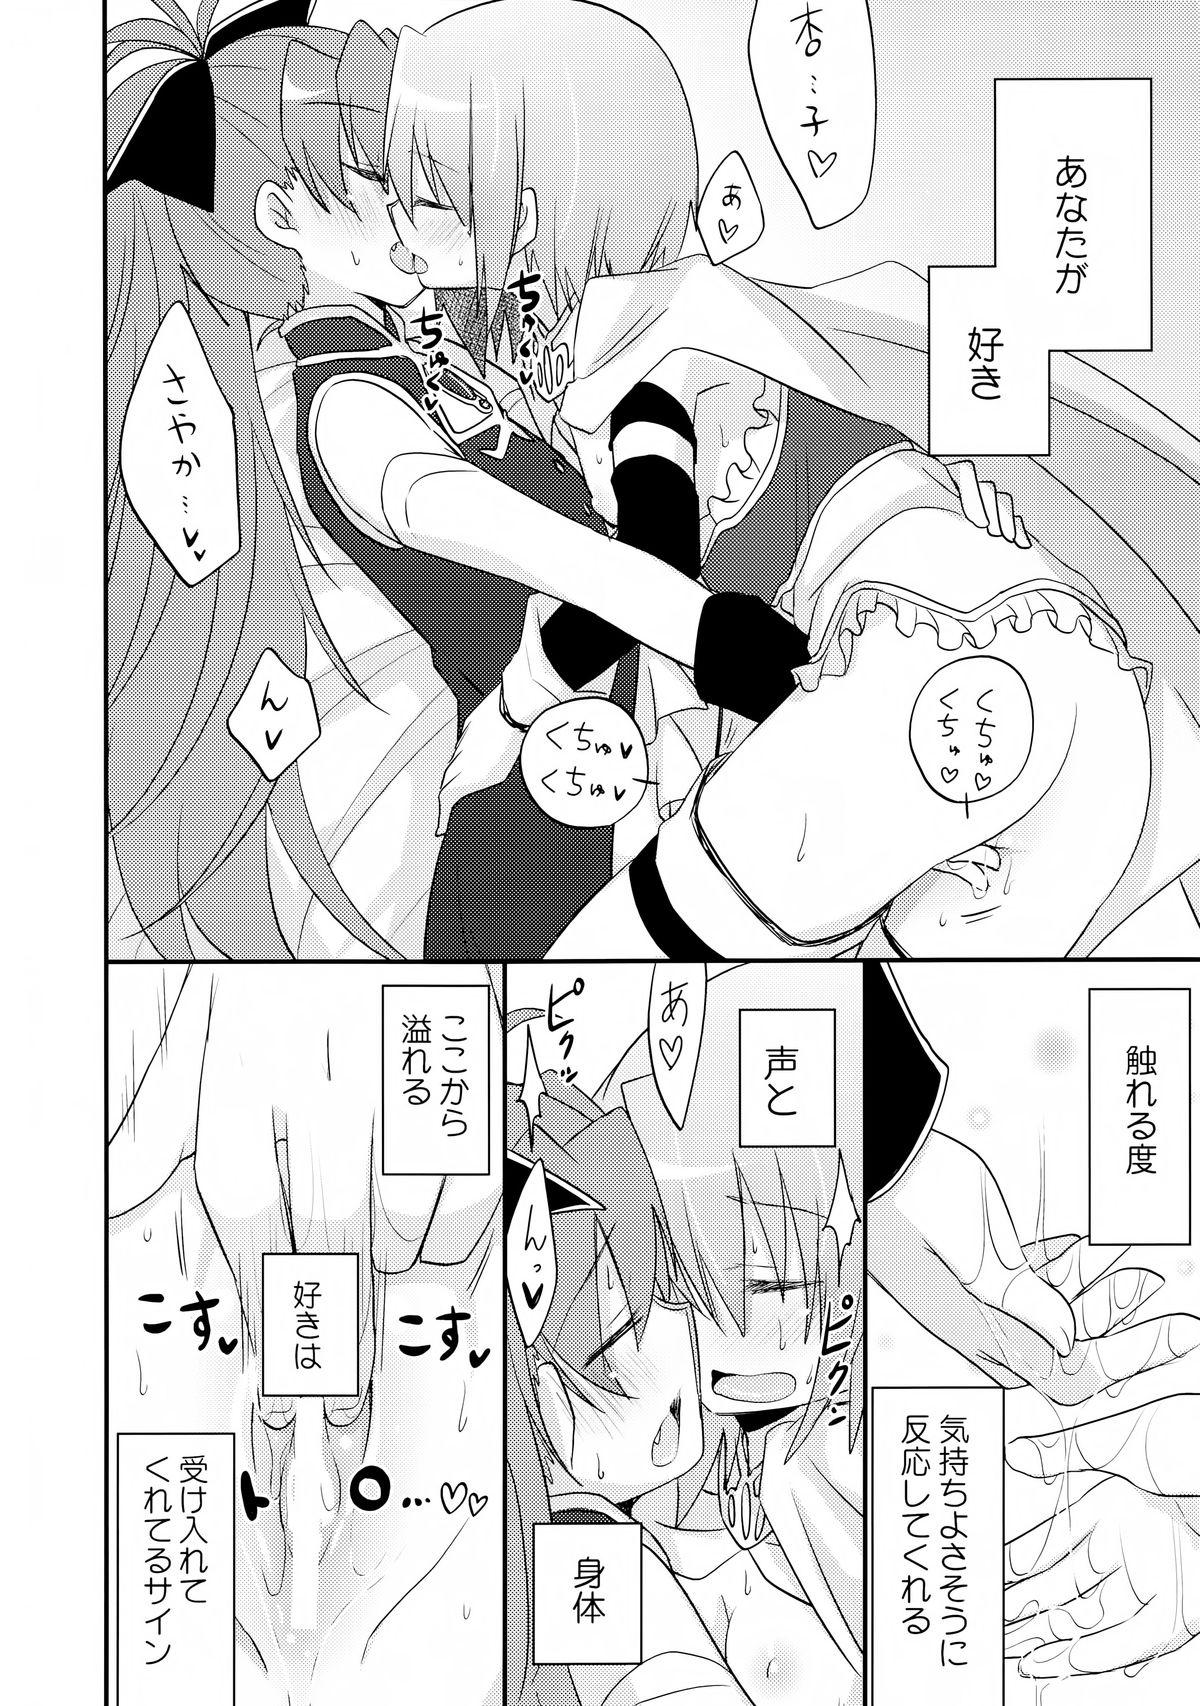 Sentando Atashitachi no Jigo Senkyou - Puella magi madoka magica Boss - Page 8